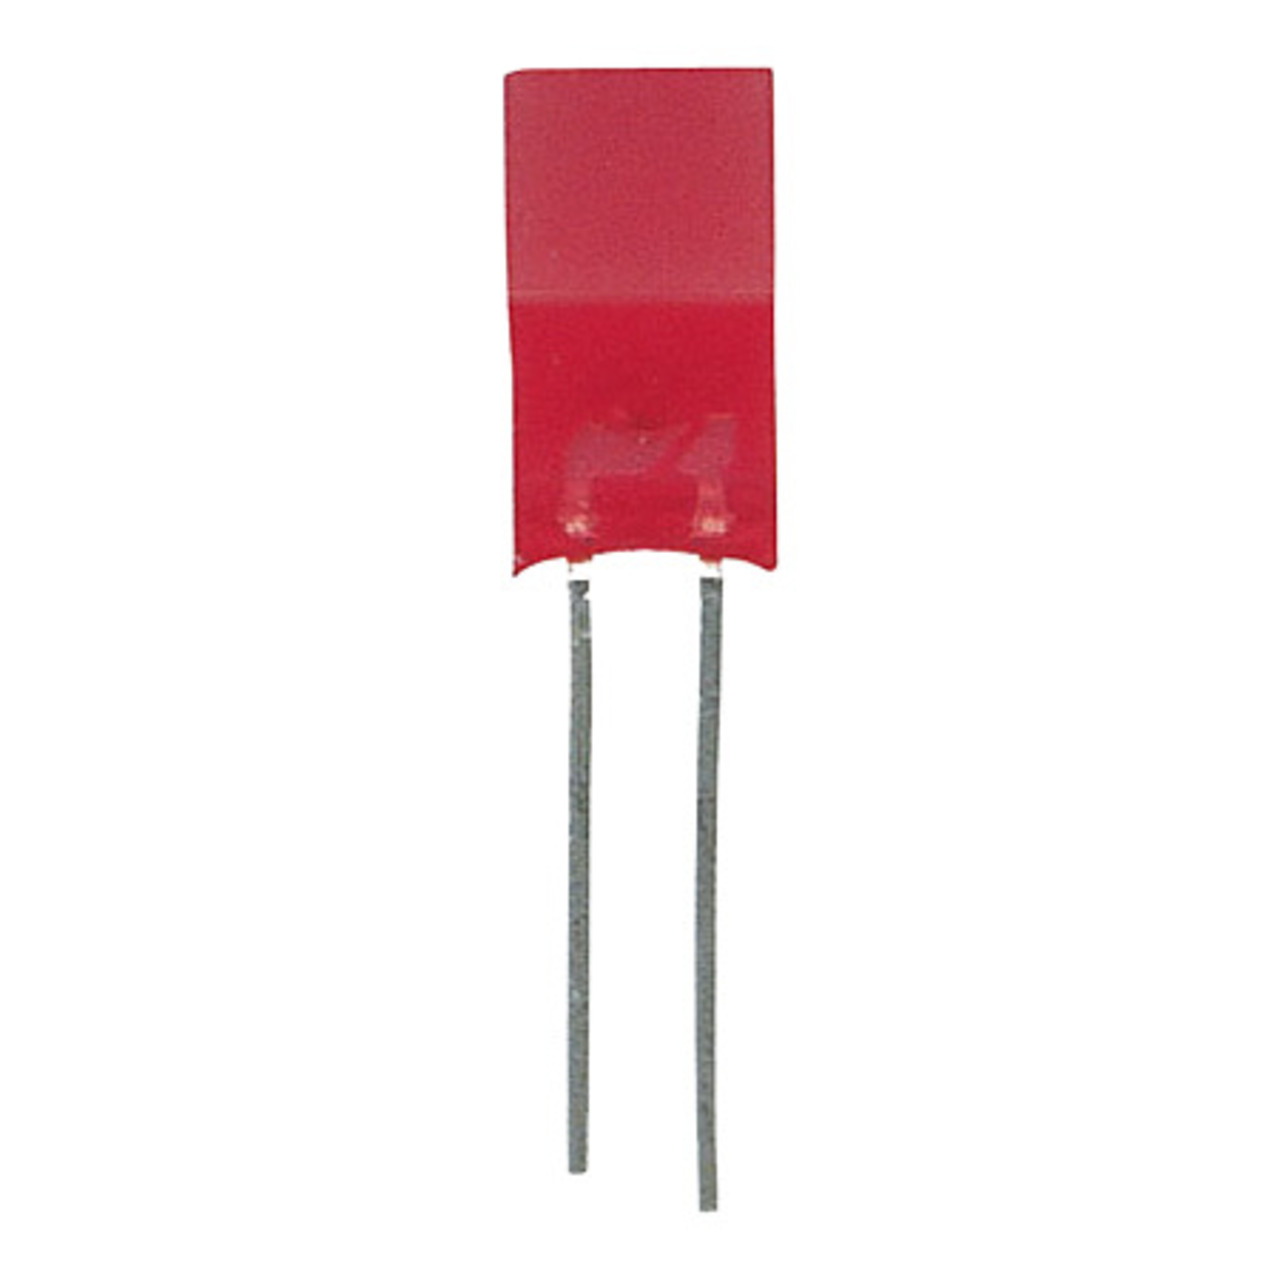 10x LED Quadratisch 5 x 5 mm Rot unter Komponenten